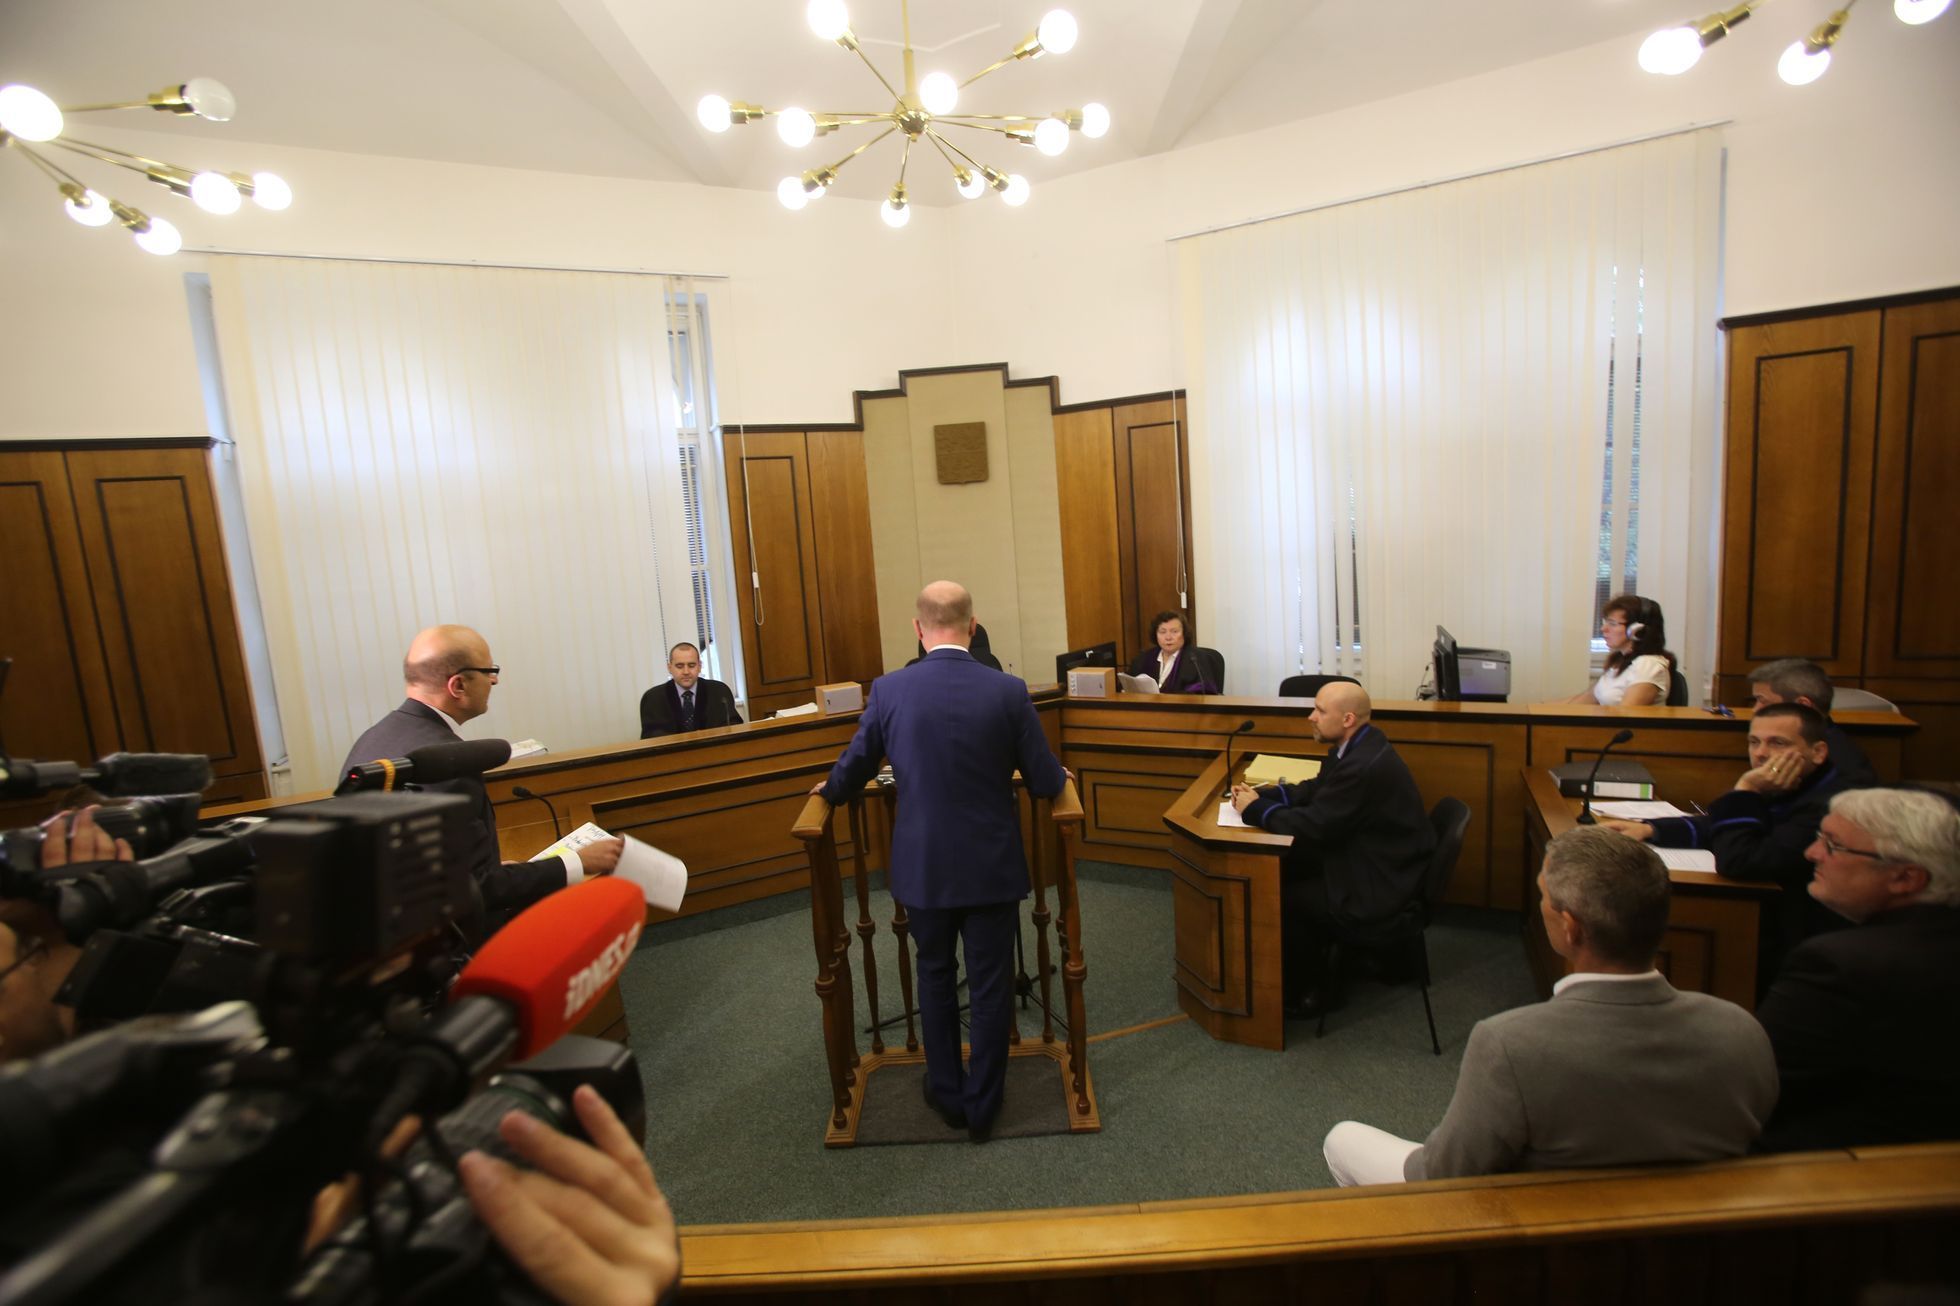 Premiér Bohuslav Sobotka (ČSSD) vypovídal 1. září 2017 jako svědek v trestní kauze spojené s privatizací OKD.